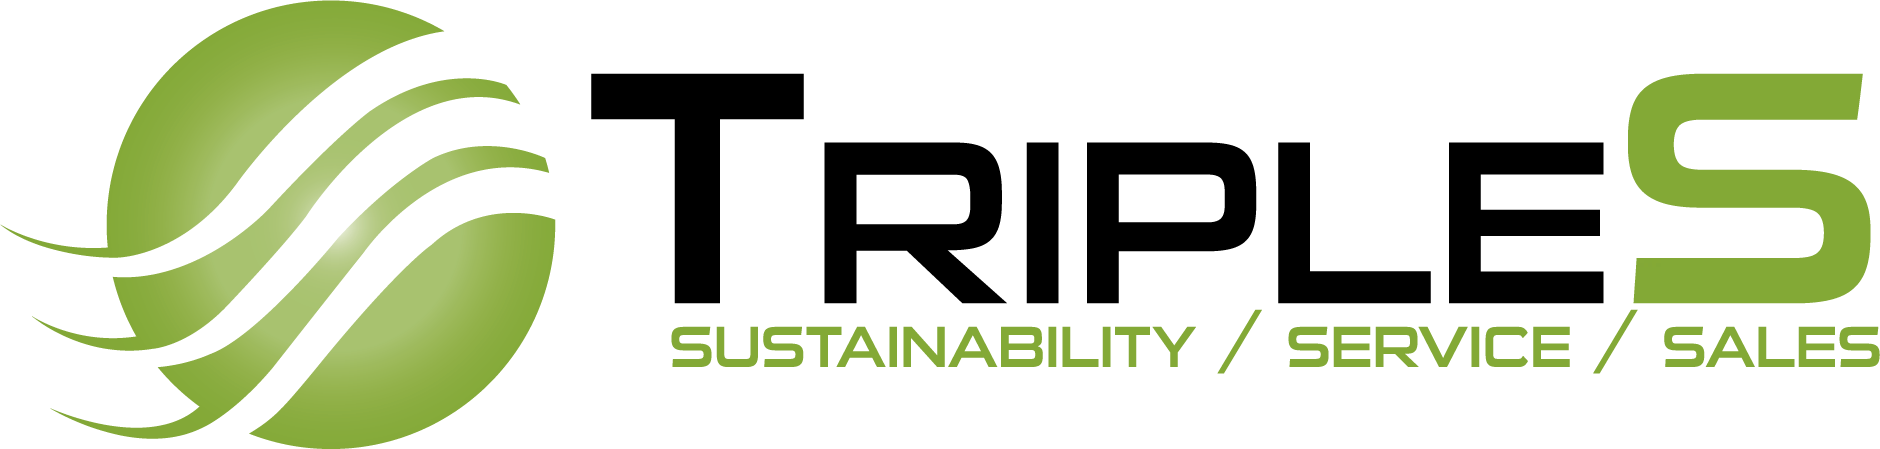 Triples Logo 1